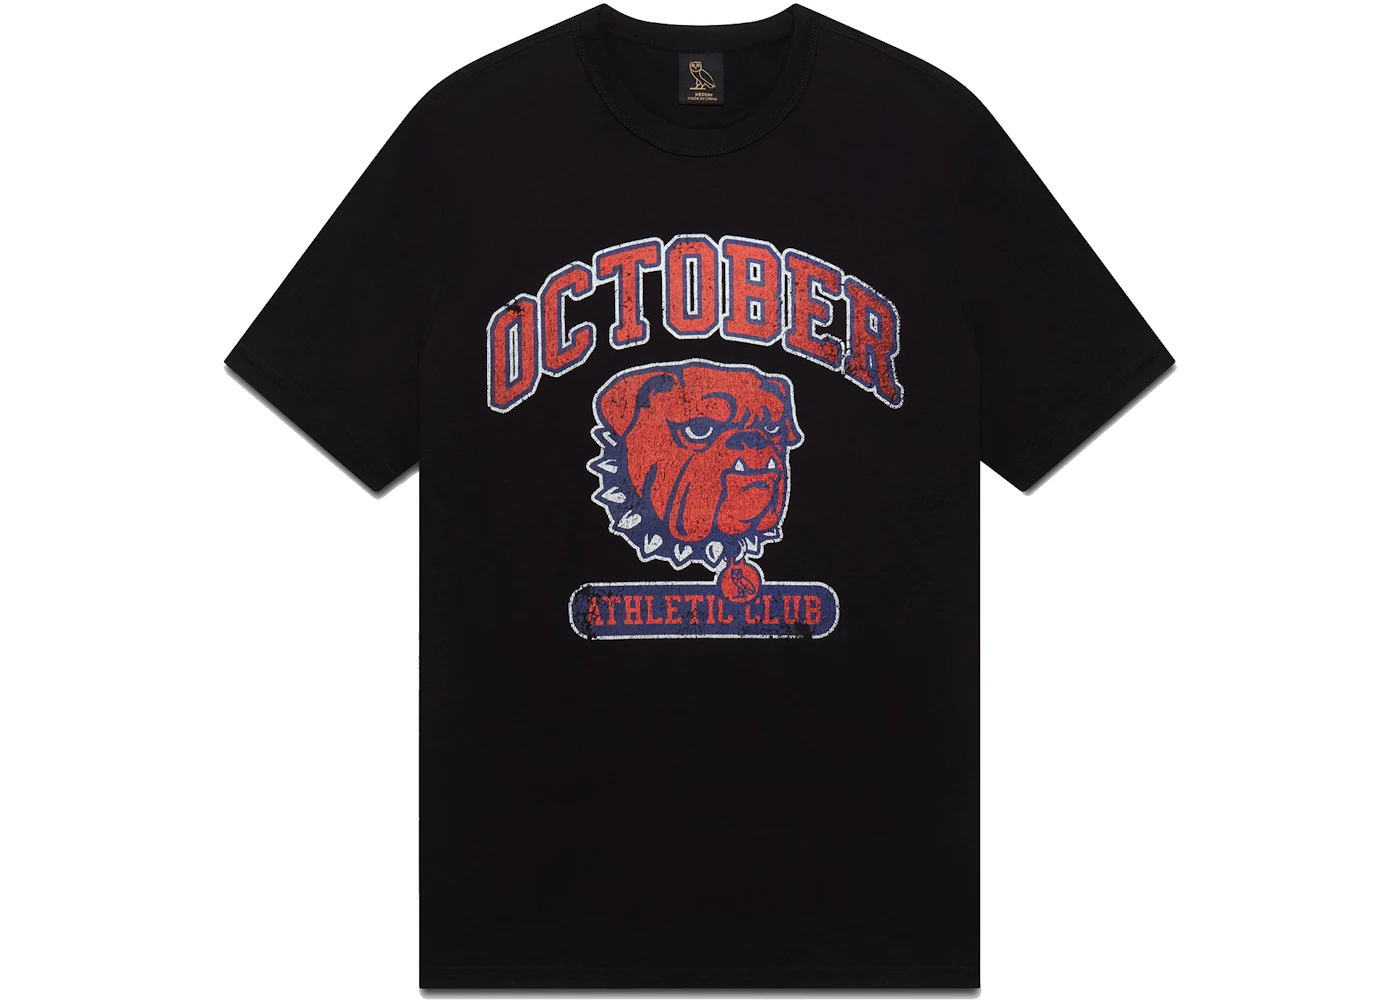 Athletic Club T-Shirt - Black